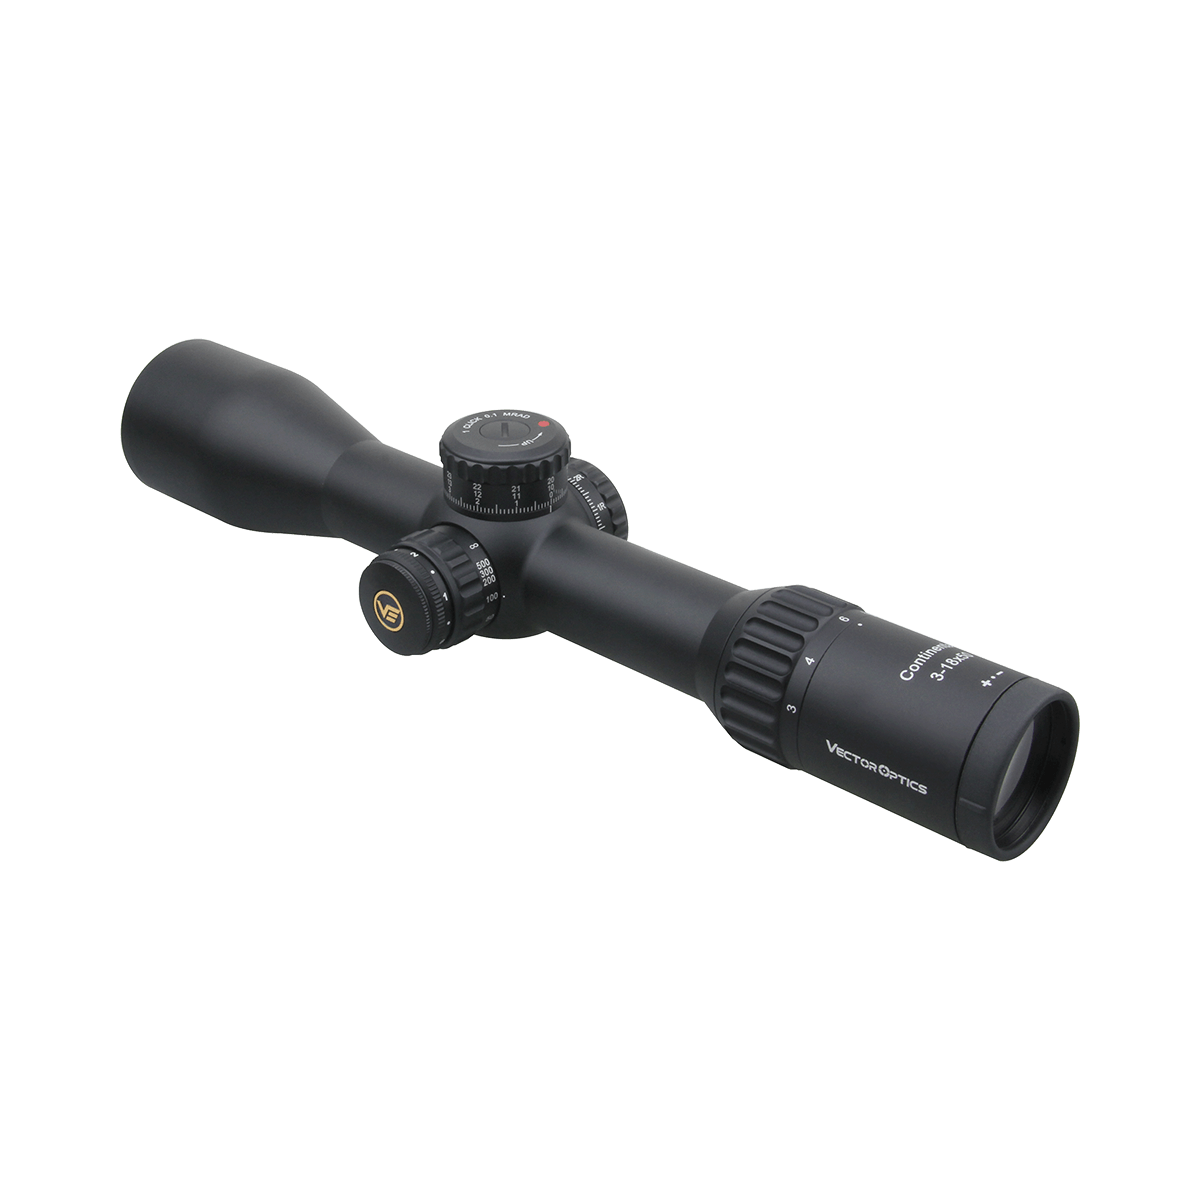 34mm Continental x6 3-18x50 VCT FFP Riflescope